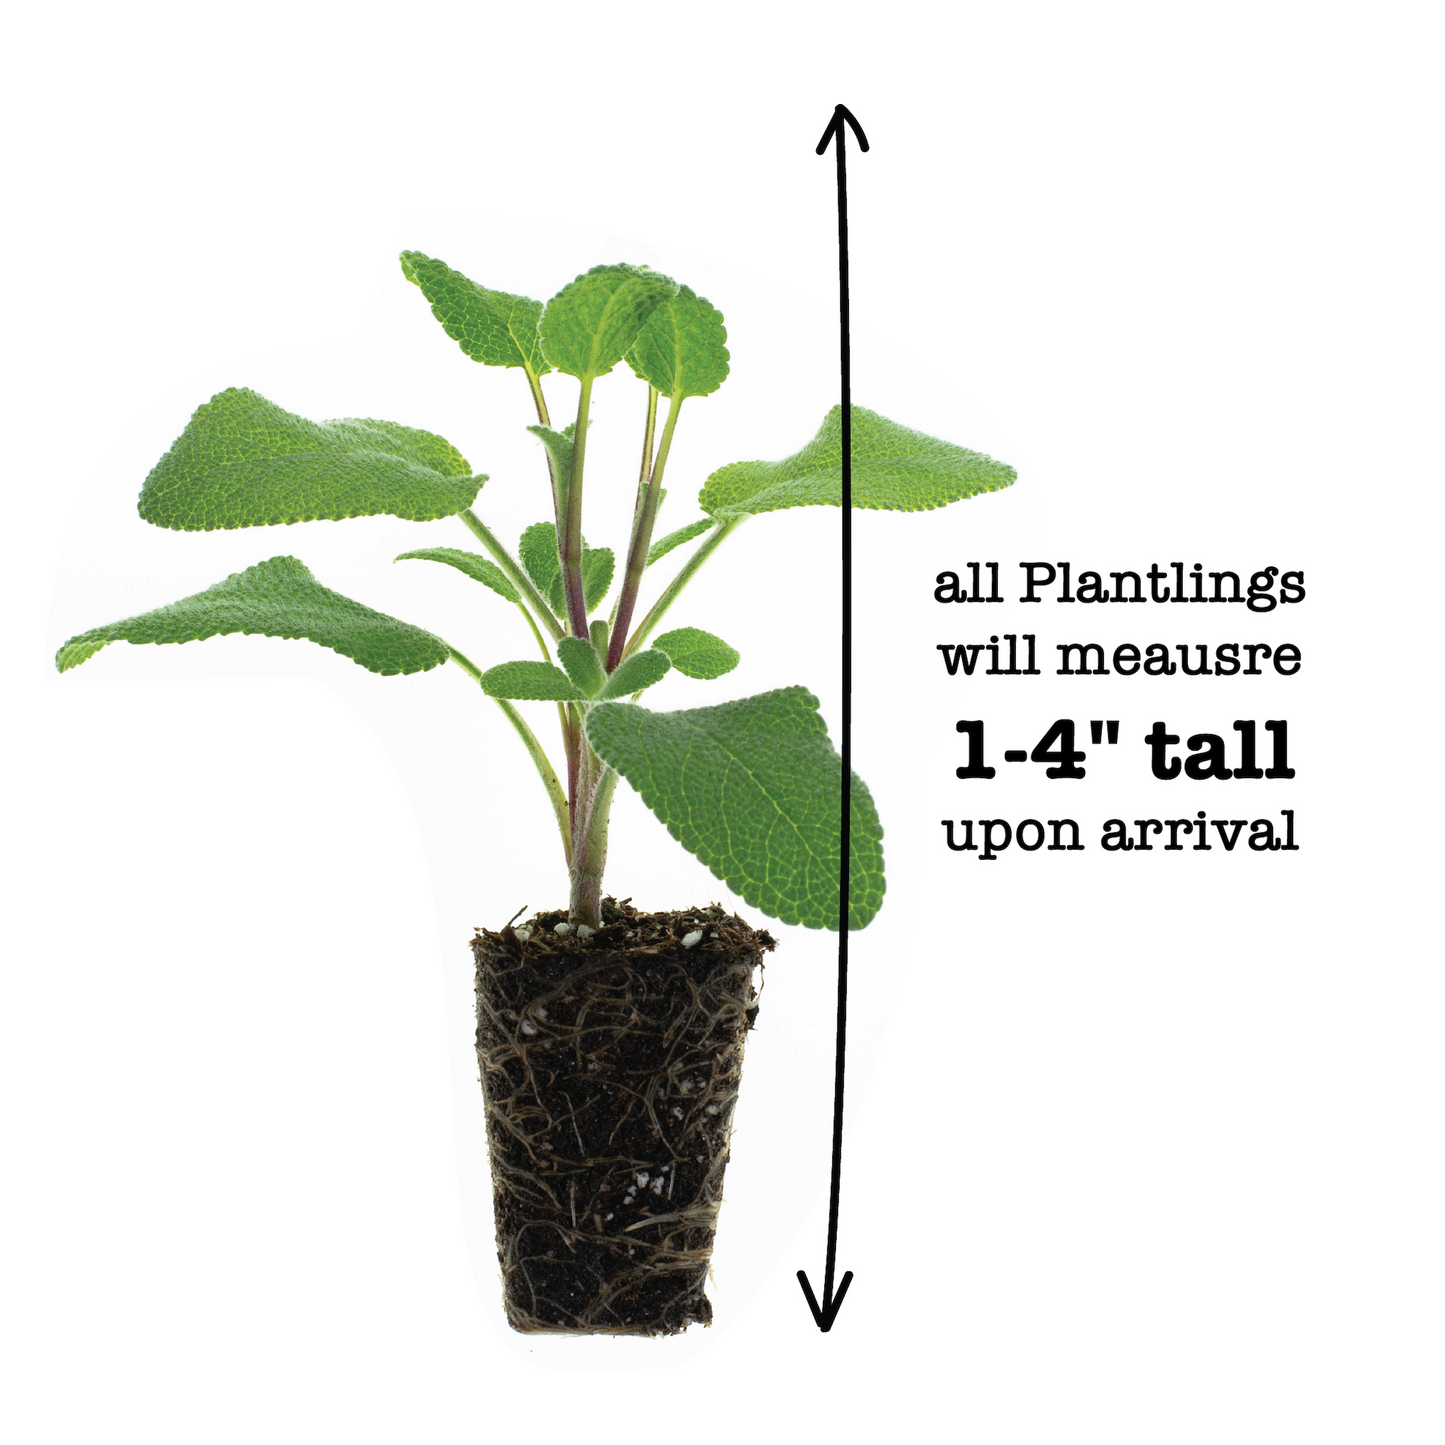 Sage Berggarten Plantlings Live Baby Plants 1-3in., 3-Pack